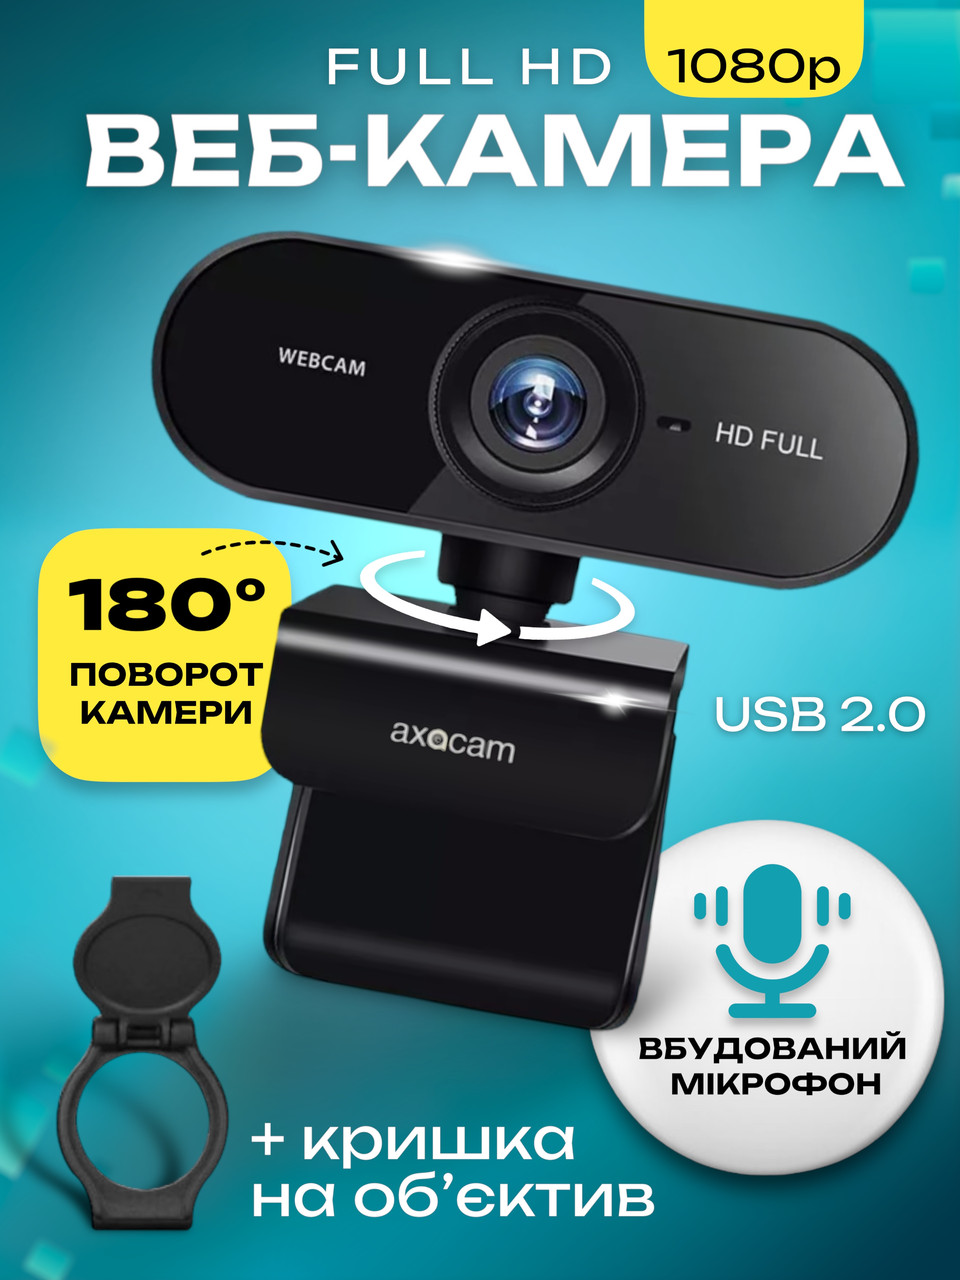 Вебкамера Full HD 1080p (1920x1080) з вбудованим мікрофоном вебкамера з автофокусом для ПК комп'ютера Axacam